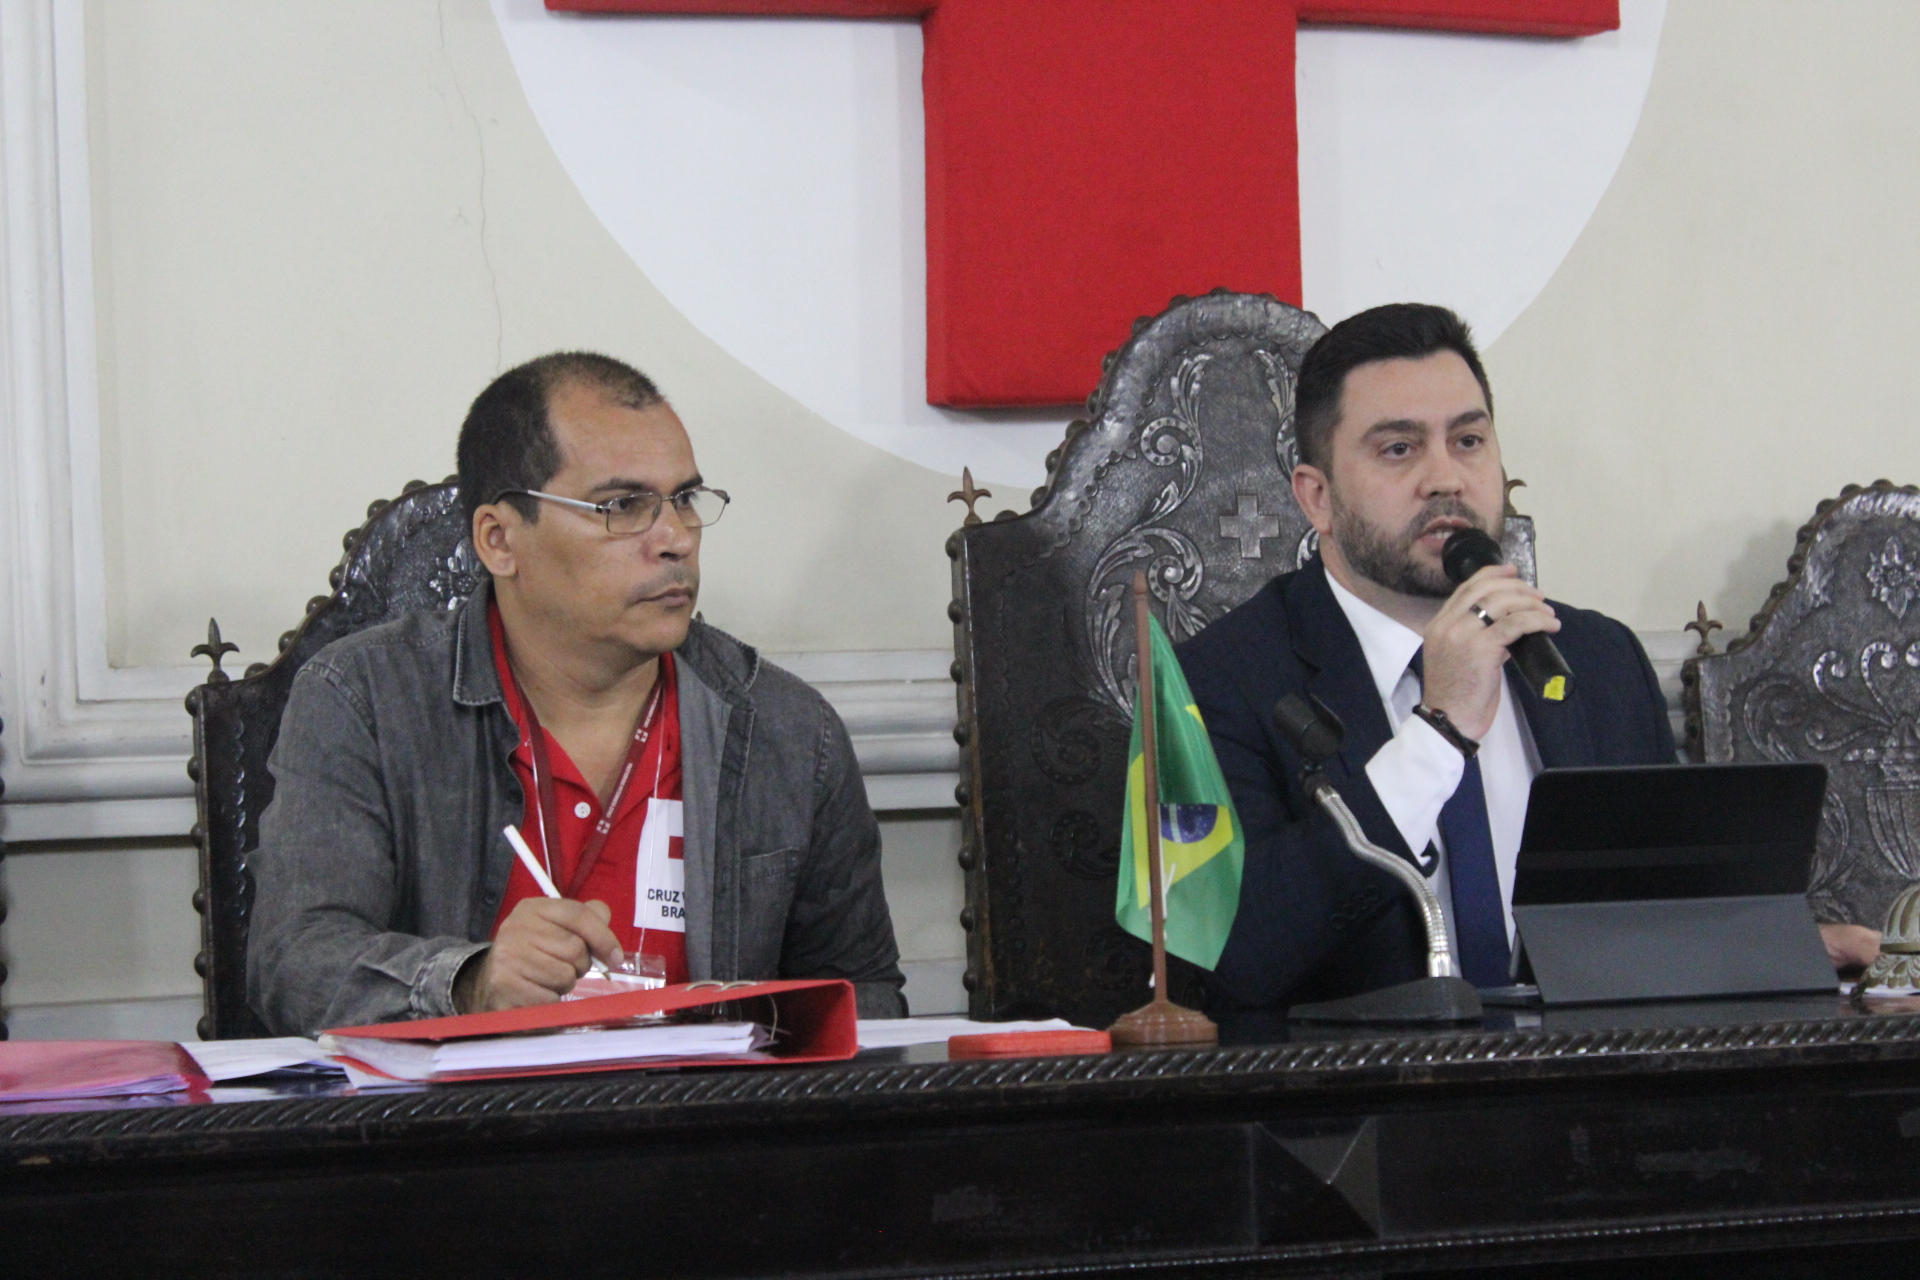 Cruz Vermelha Brasileira reúne presidentes e conselheiros nacionais em Assembleia Geral no Rio de Janeiro (1)